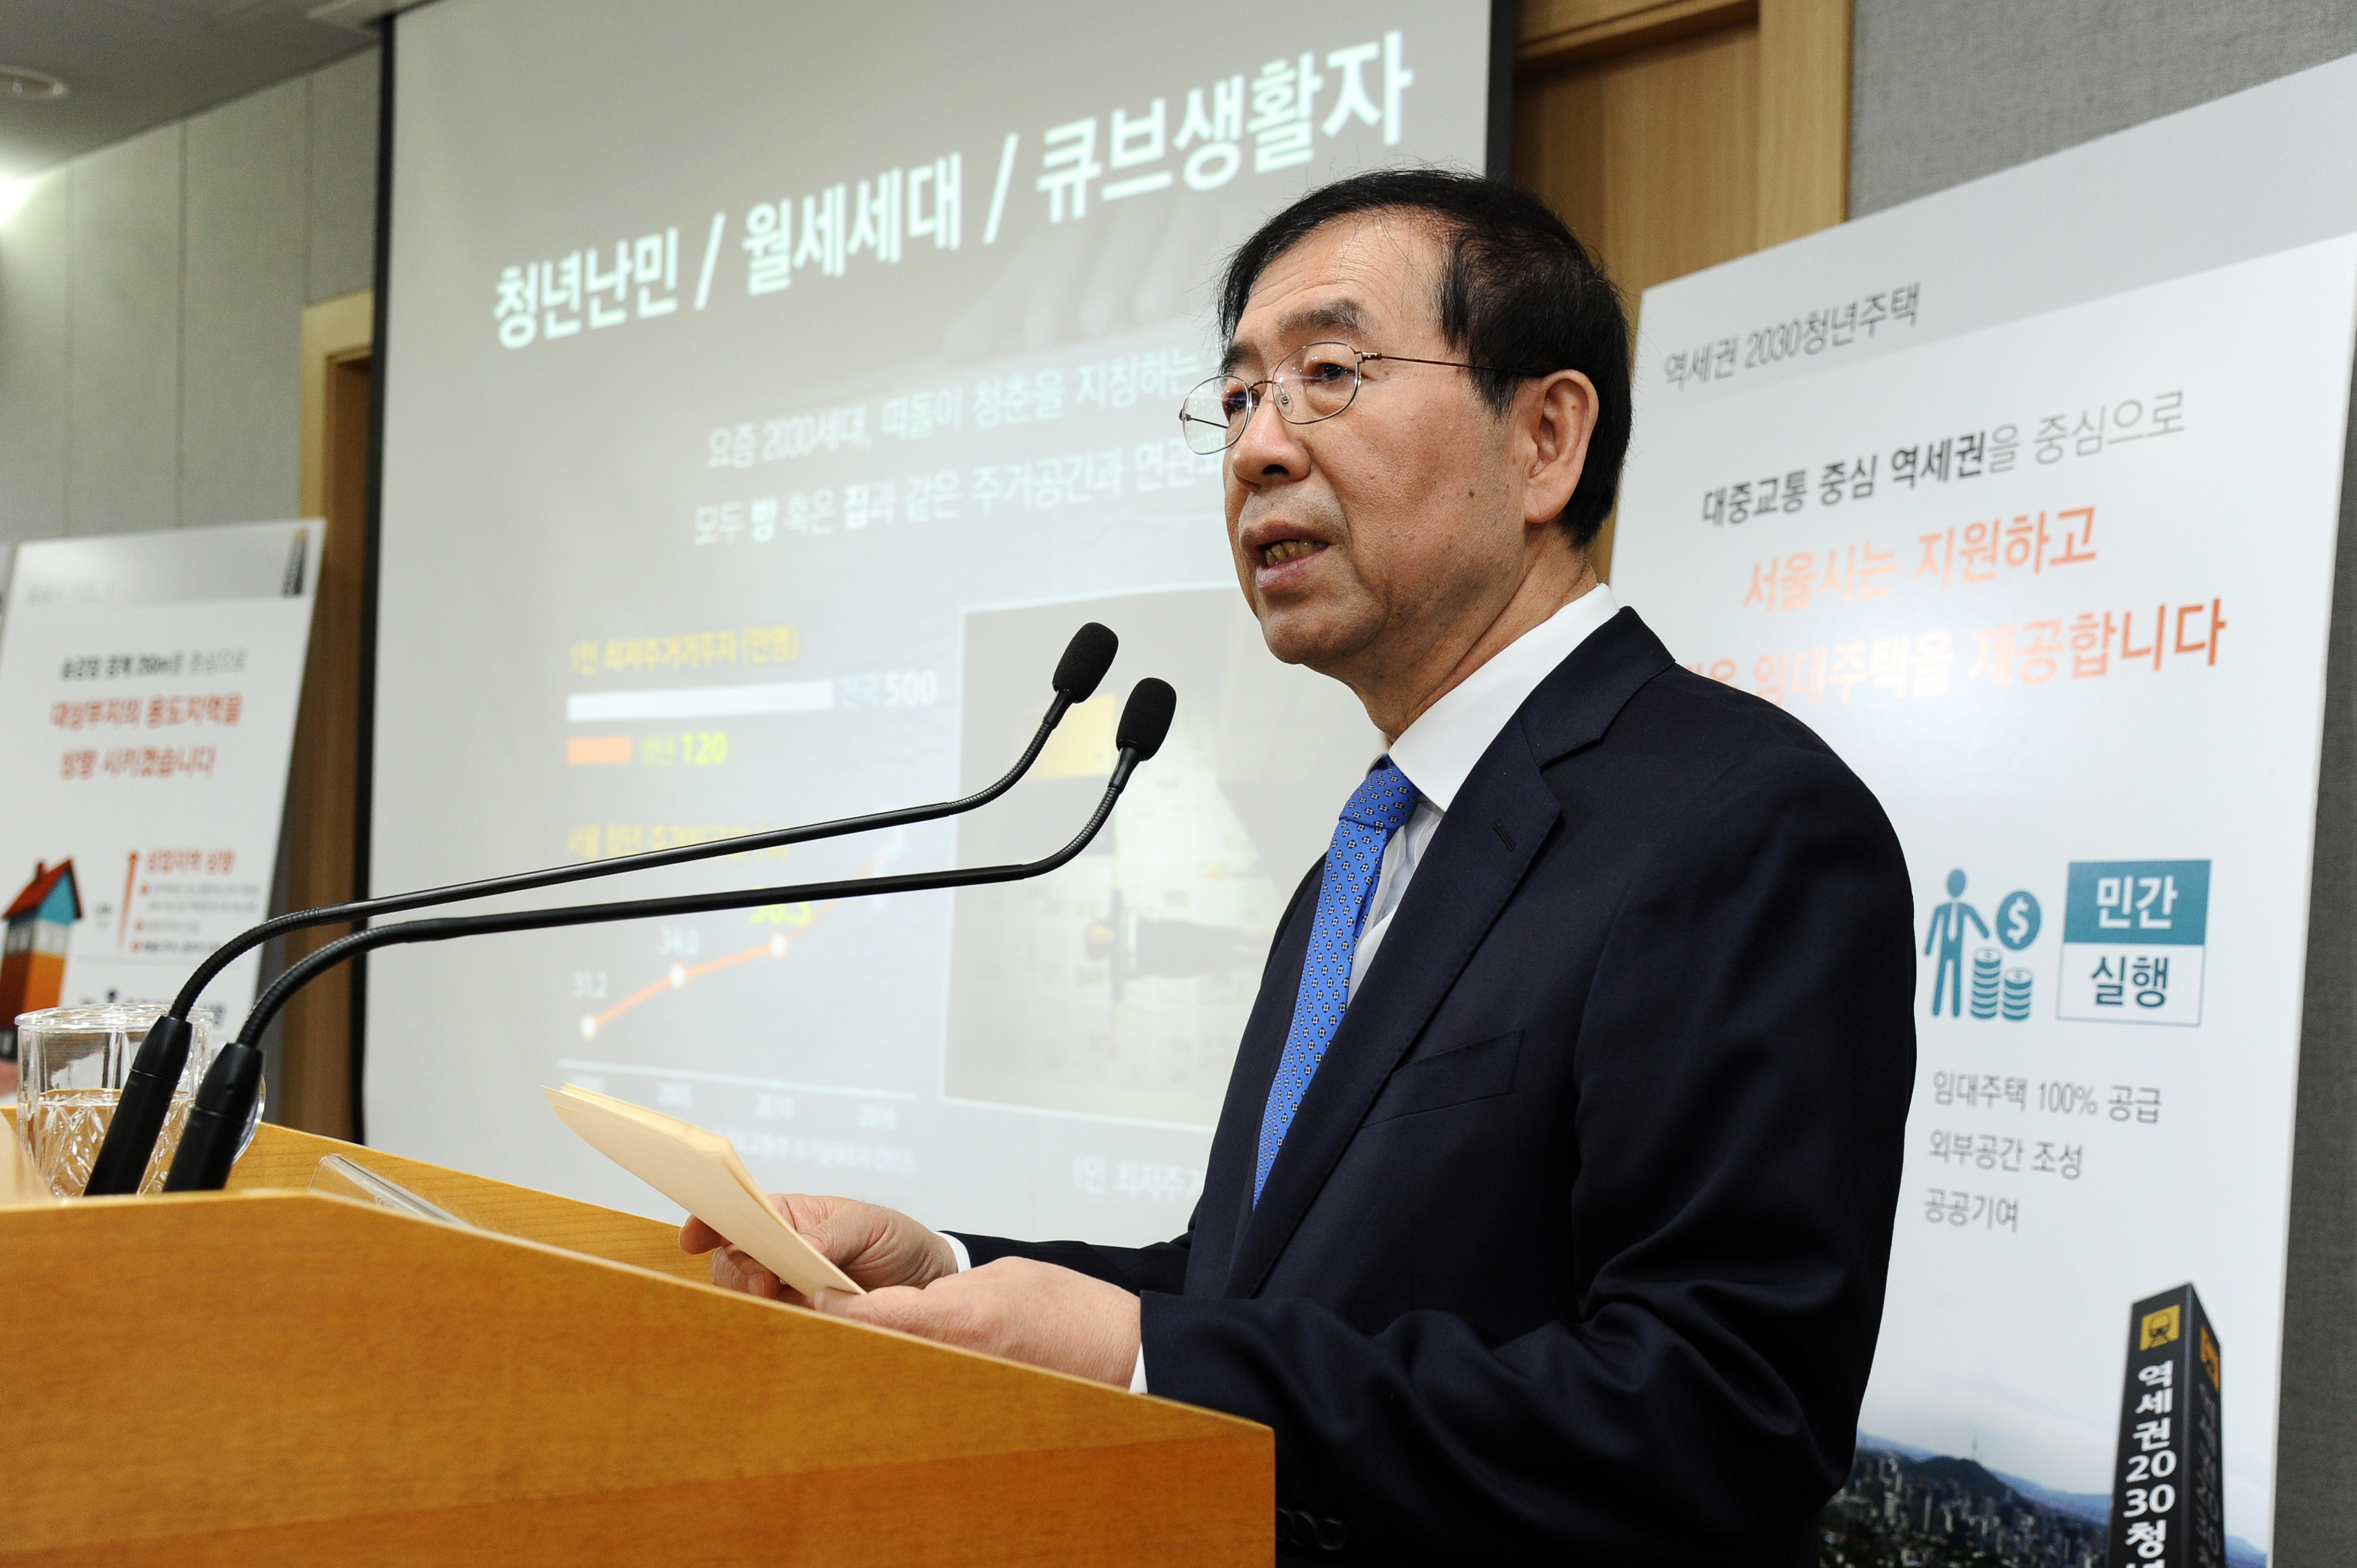 박원순 서울시장이 지난 3월 23일 기자설명회에서 '역세권 2030청년주택' 공급사업에 대해 설명하고 있다.